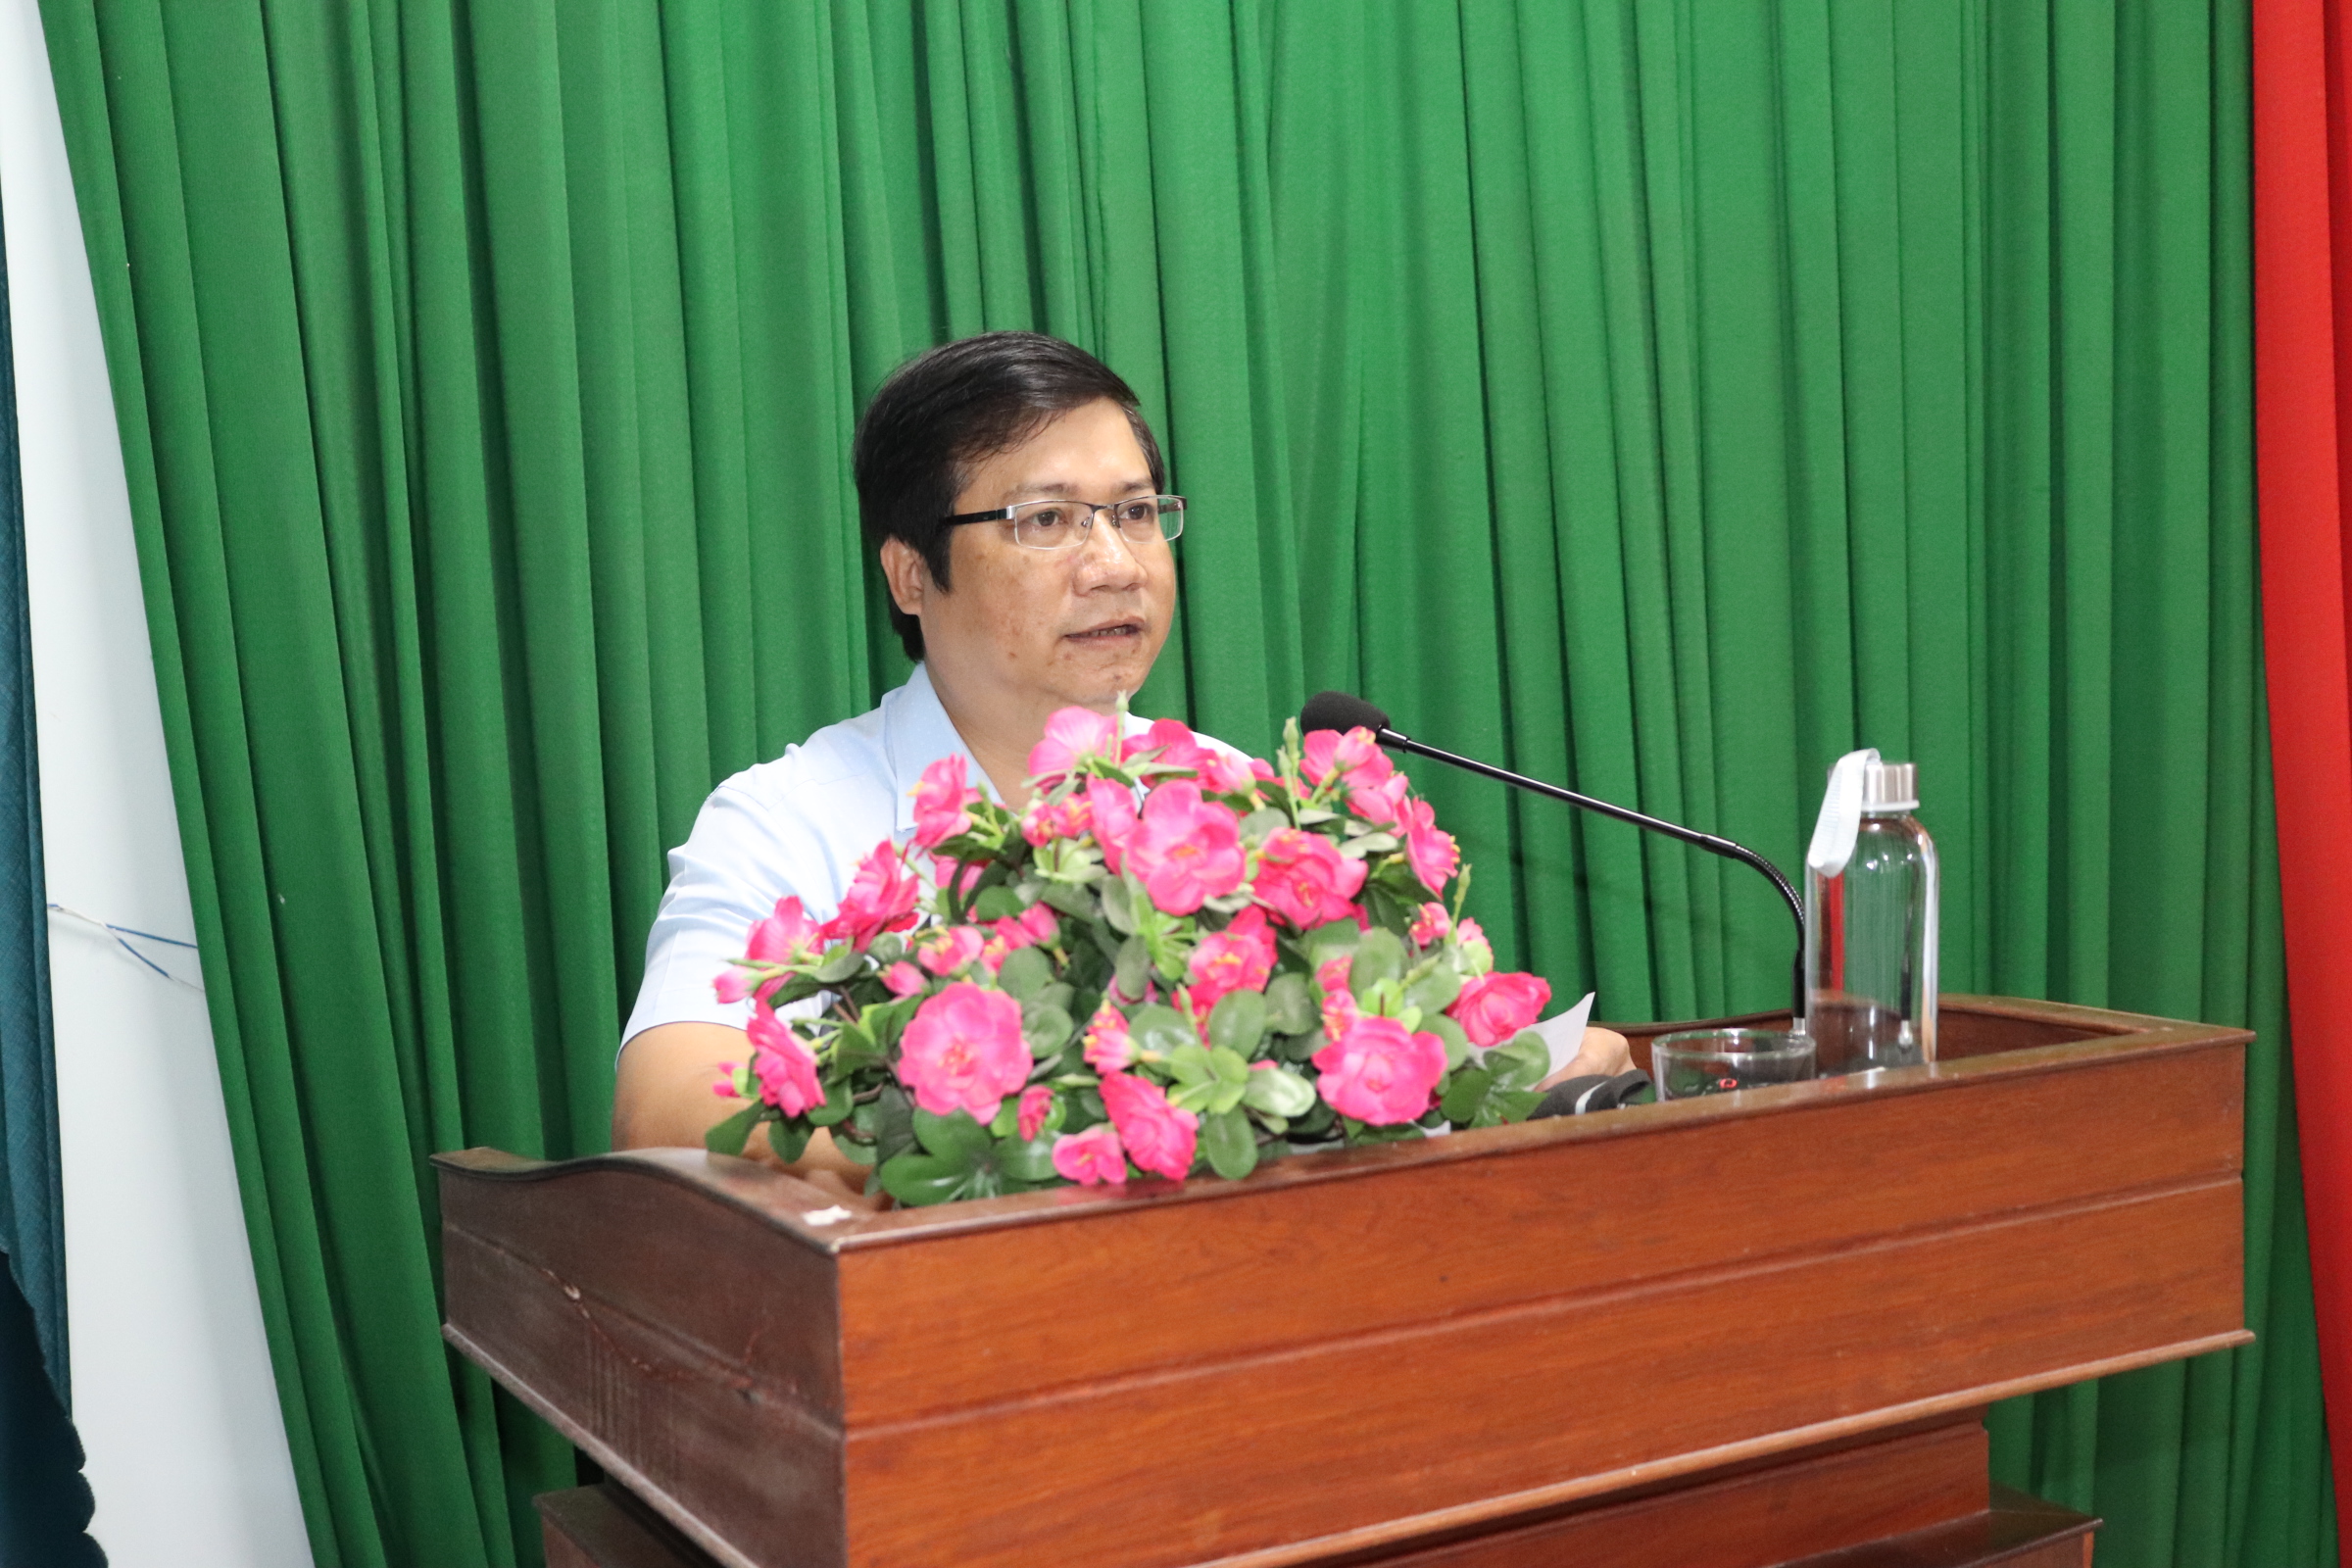 UBND huyện Ba Tơ tổ chức Hội nghị tổng kết Đề án tái cơ cấu ngành Nông nghiệp, giai đoạn 2016-2020, triển khai kế hoạch cơ cấu lại ngành nông nghiệp huyện Ba Tơ đến năm 2025